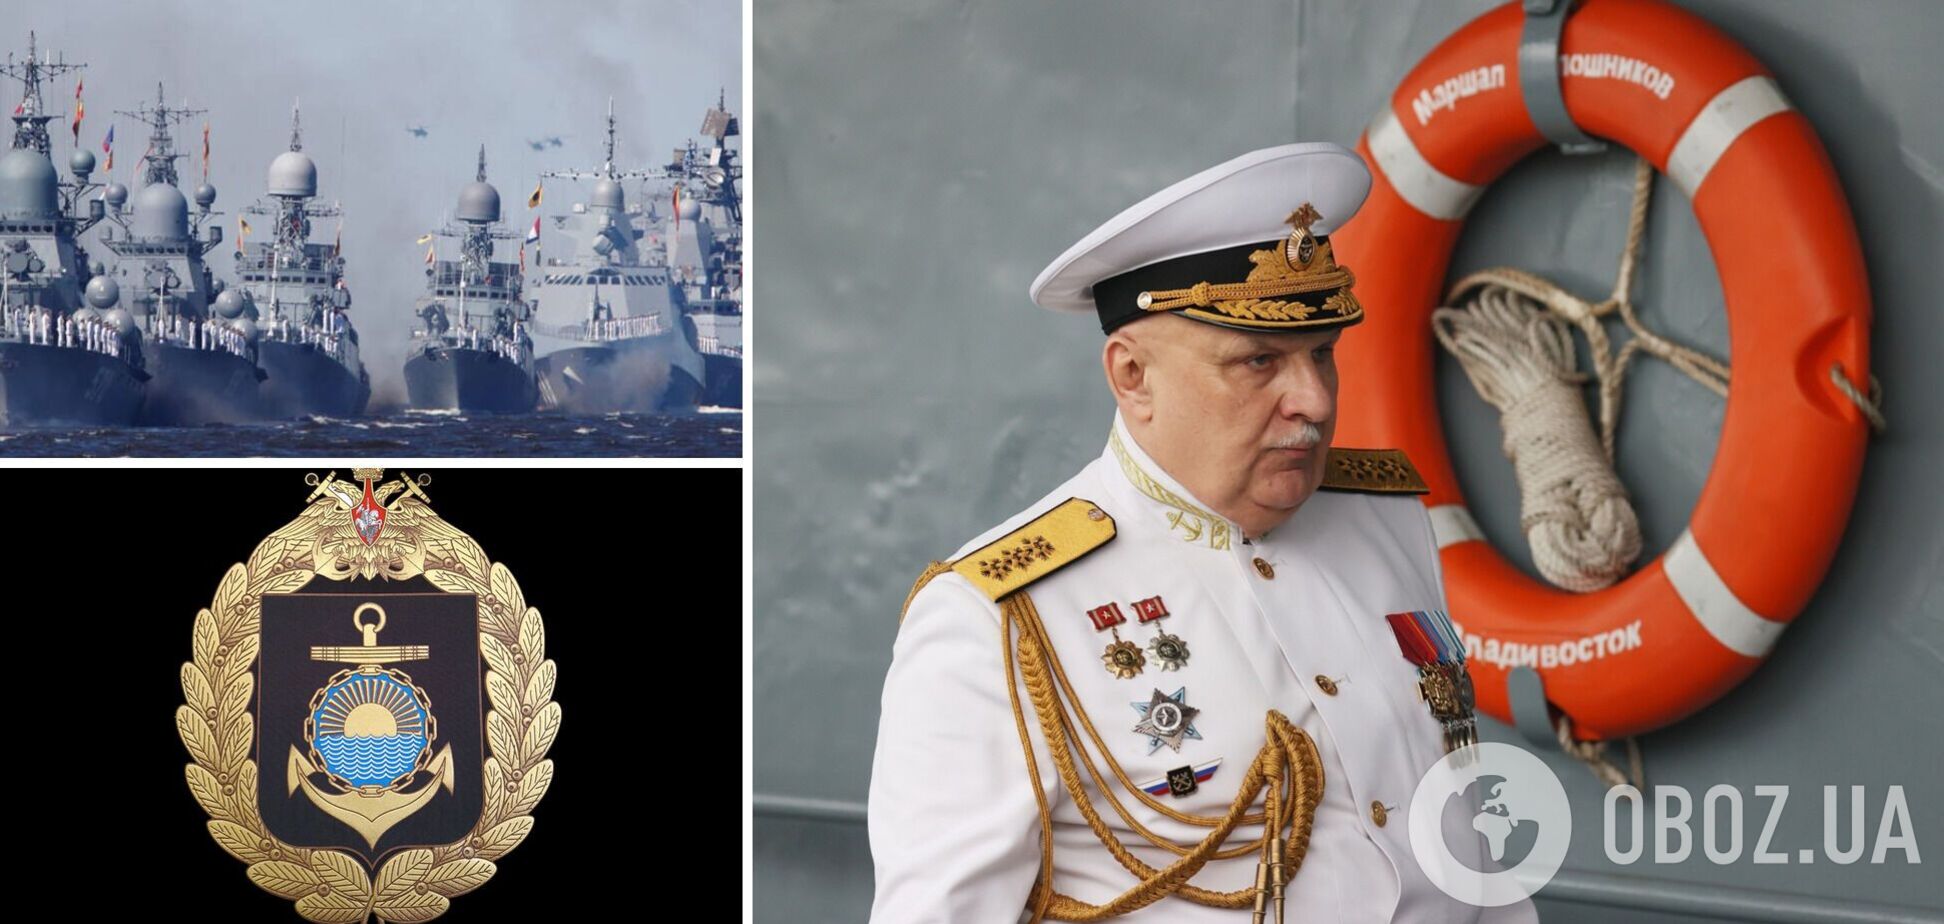 Командующий Тихоокеанского флота ушел в отставку после оглашения внезапной проверки: СМИ узнали подробности